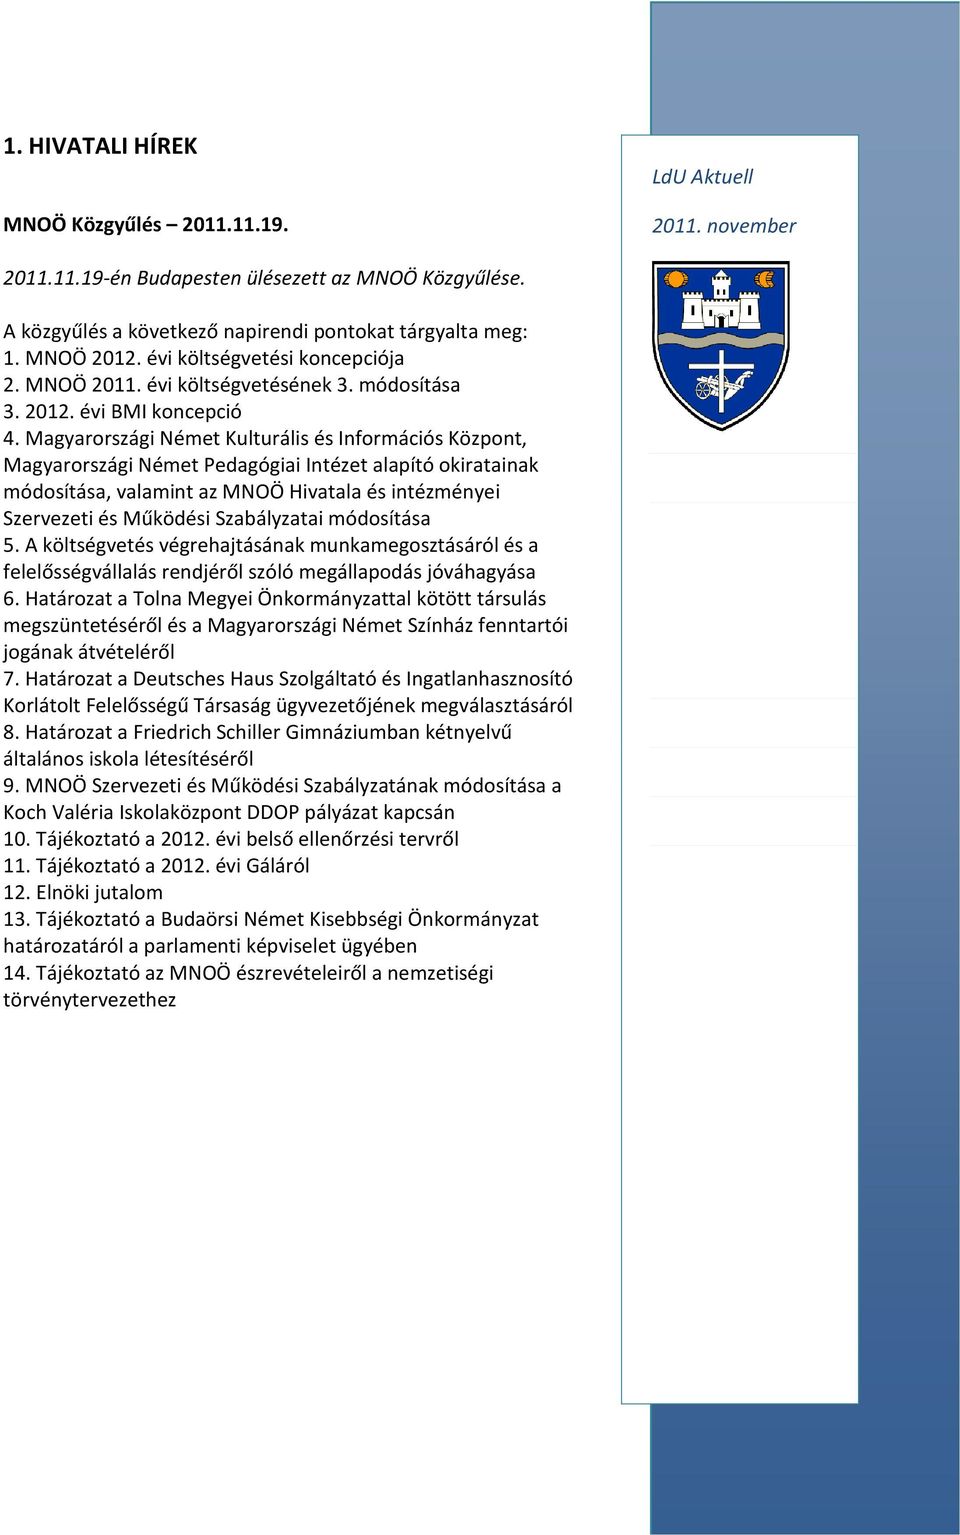 Magyarországi Német Kulturális és Információs Központ, Magyarországi Német Pedagógiai Intézet alapító okiratainak módosítása, valamint az MNOÖ Hivatala és intézményei Szervezeti és Működési